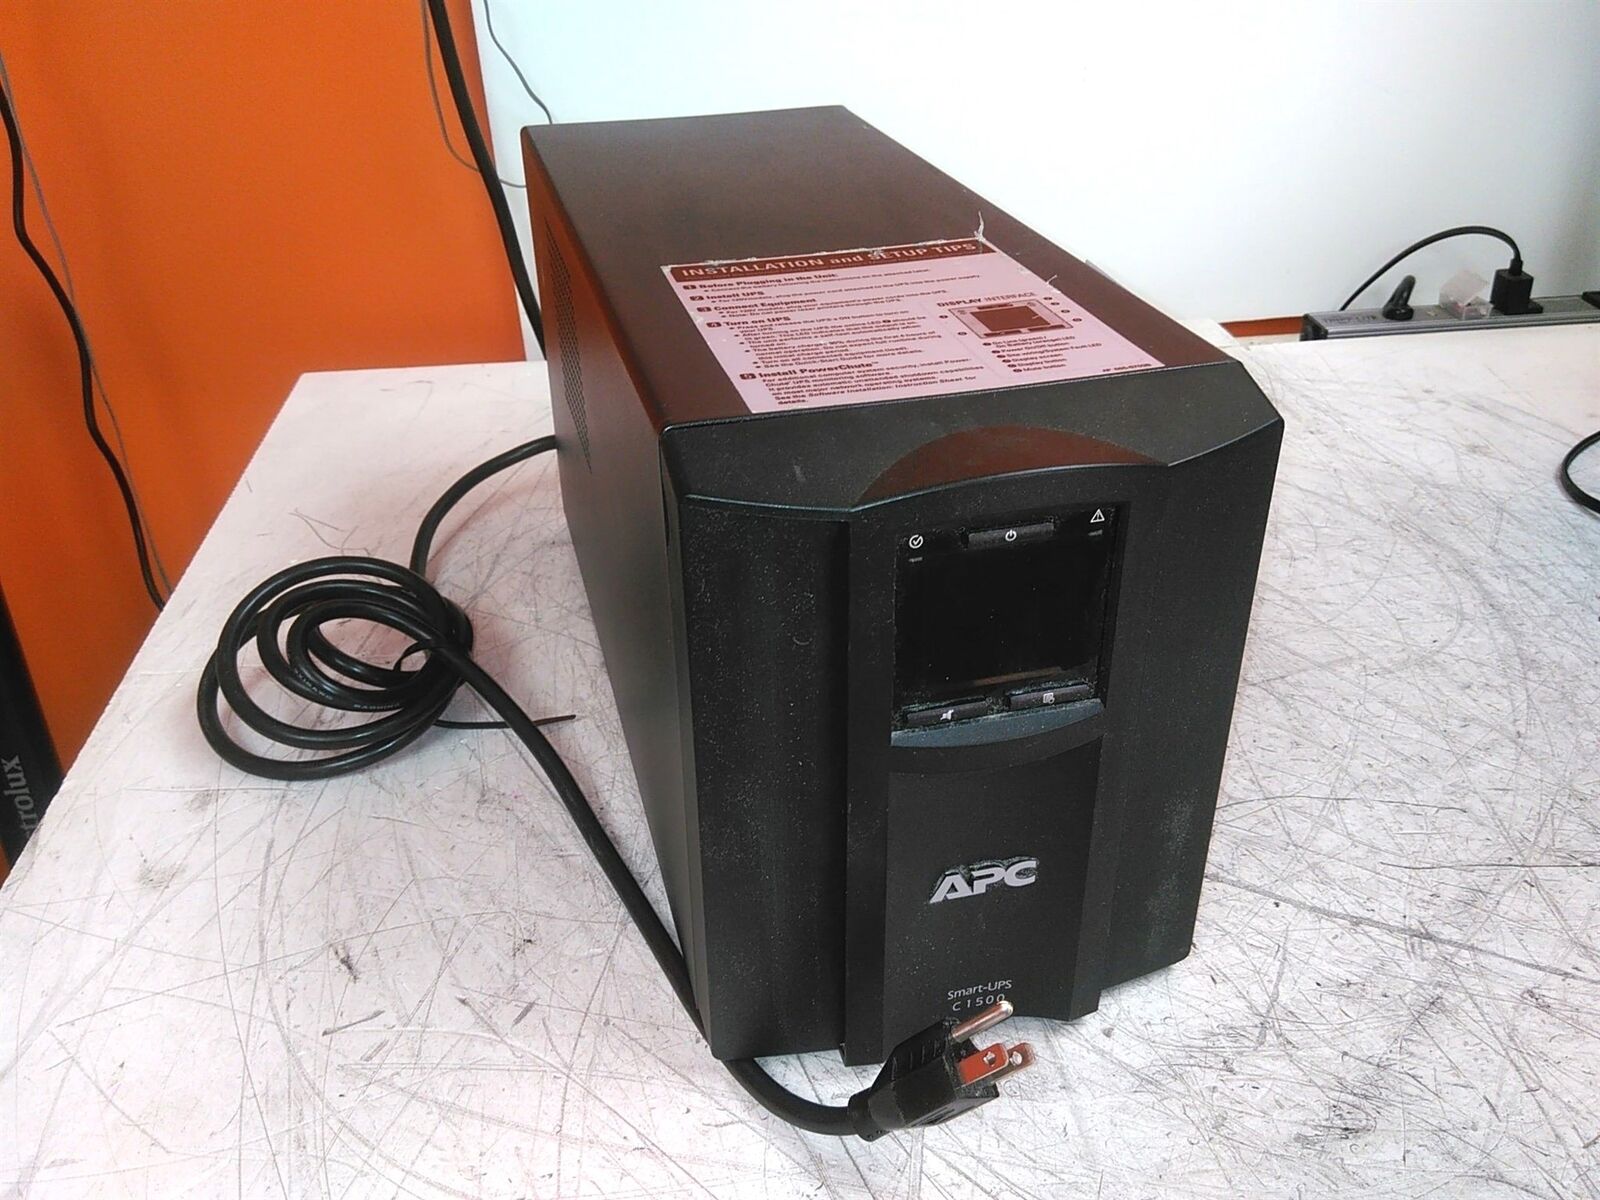 APC C1500 SMC1500 Smart UPS 1500VA 120V 8 Outlet No Batteries No Wire Harness